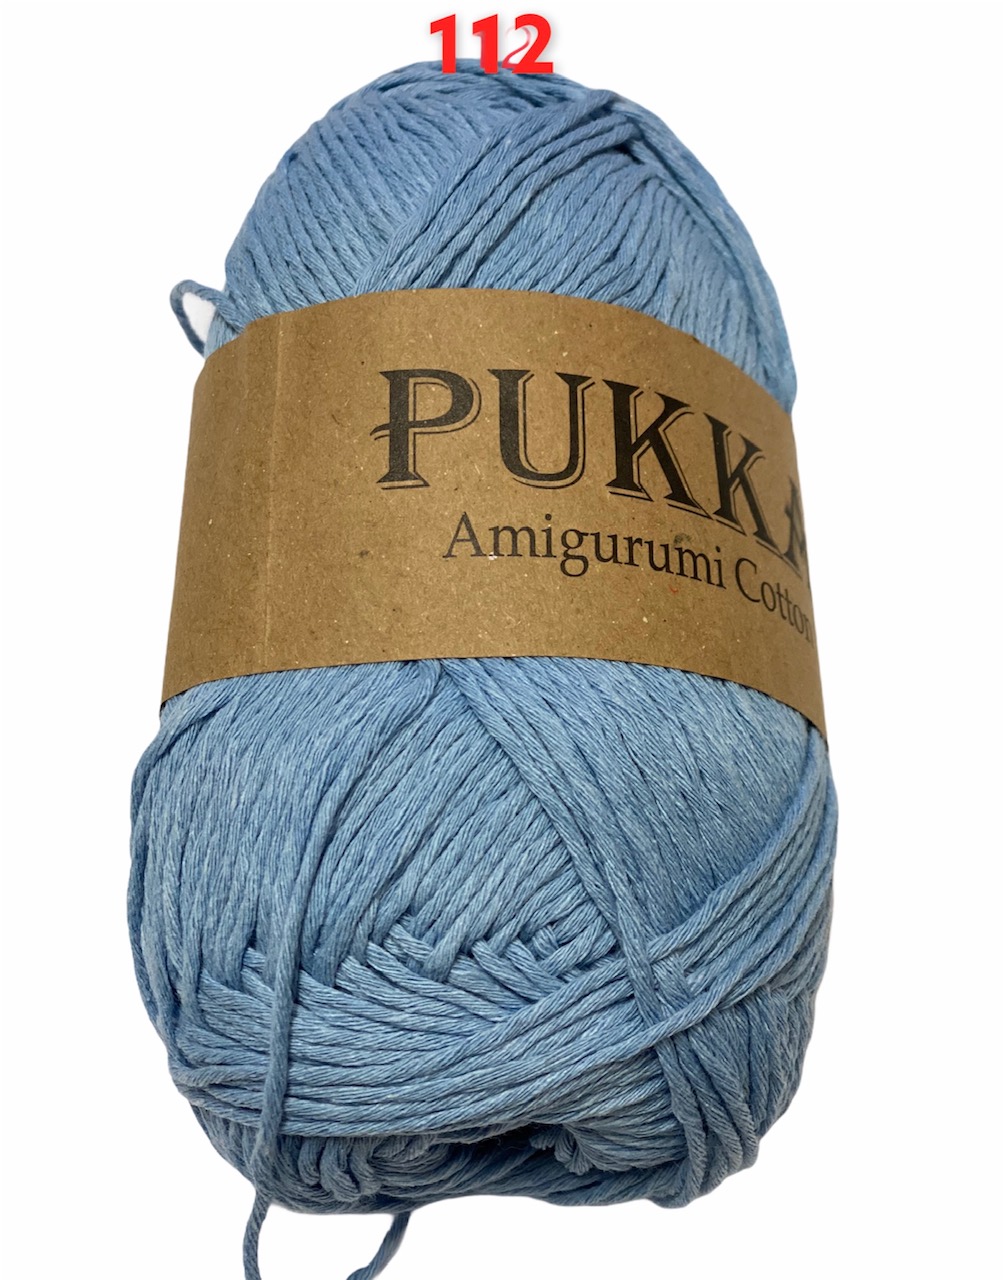 PUKKA Amigurumi Cotton 100g,112